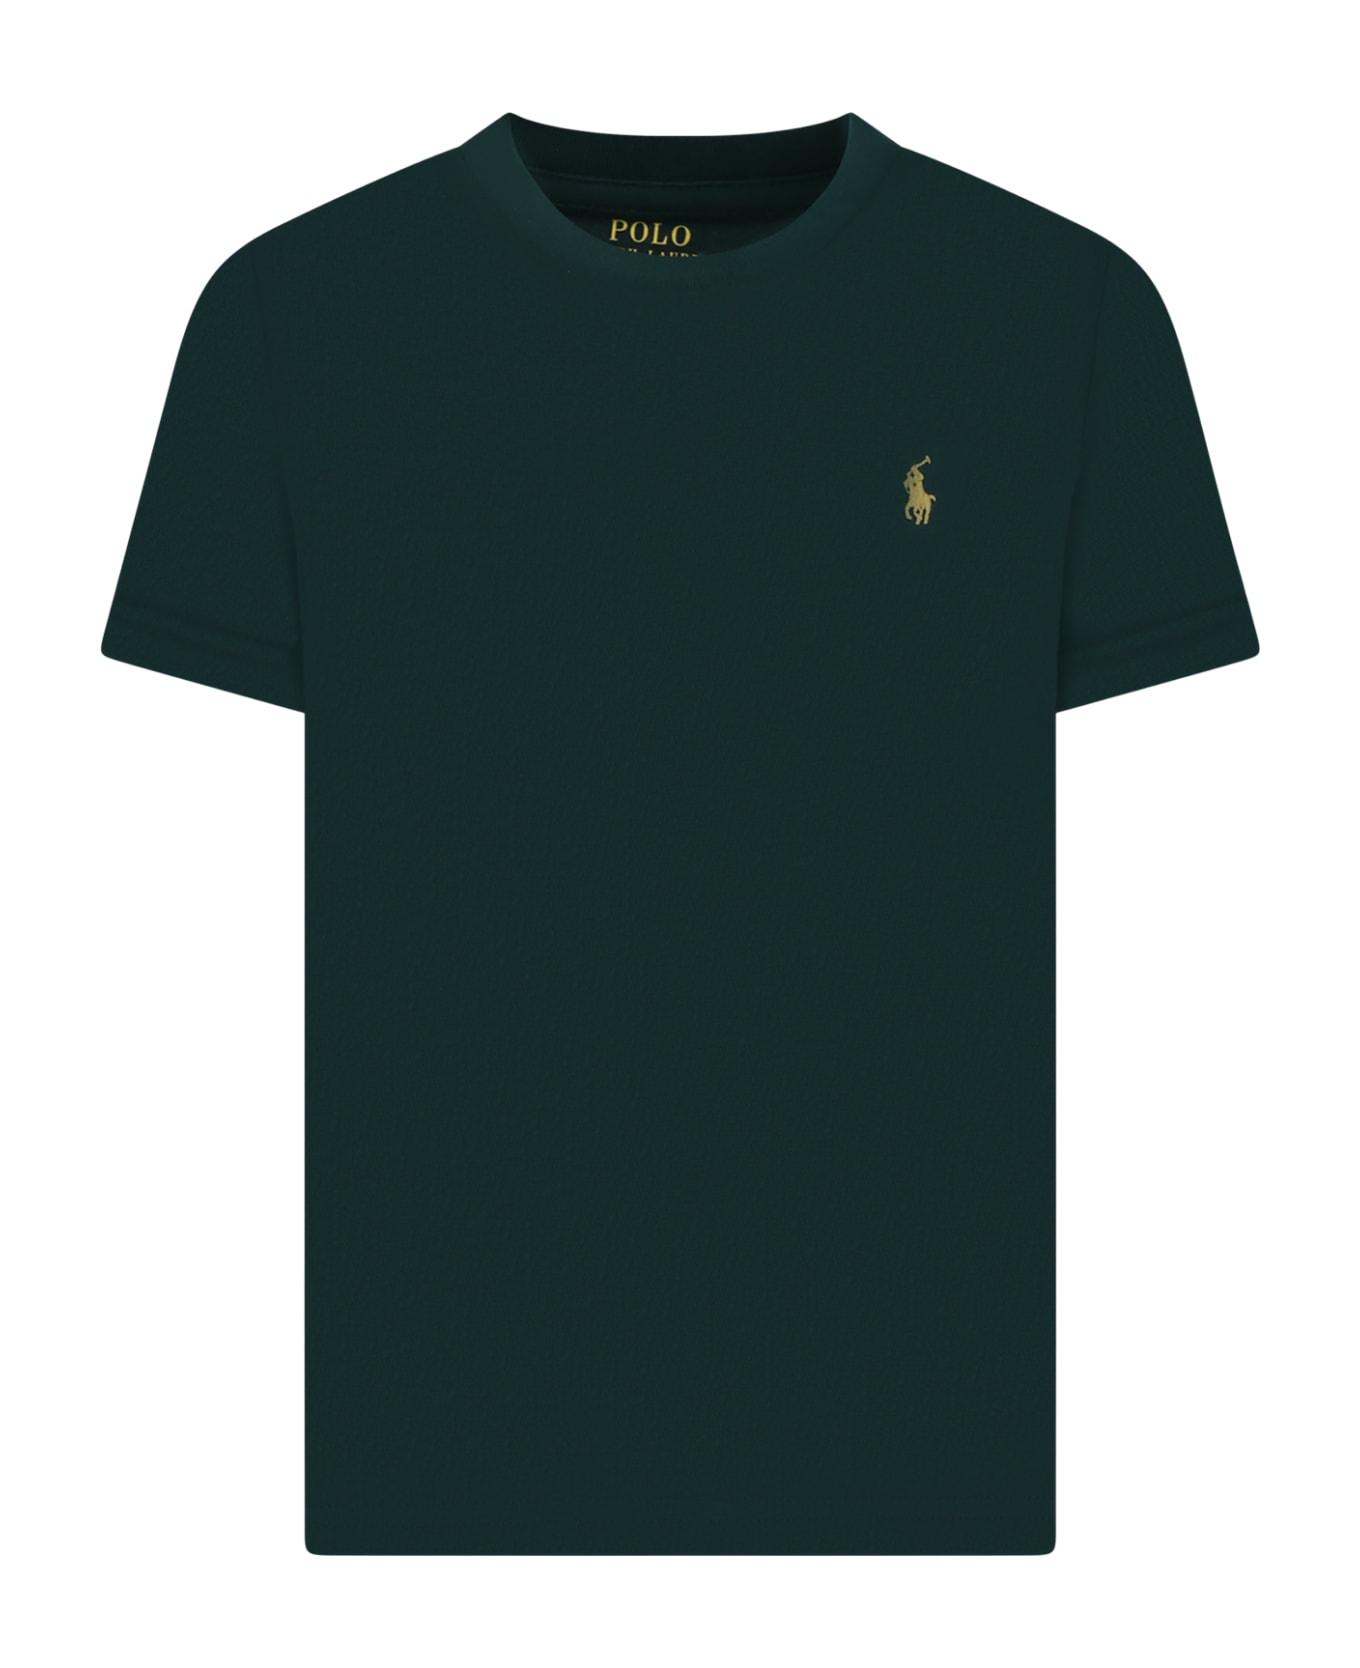 Ralph Lauren Green T-shirt For Boy With Logo - Green